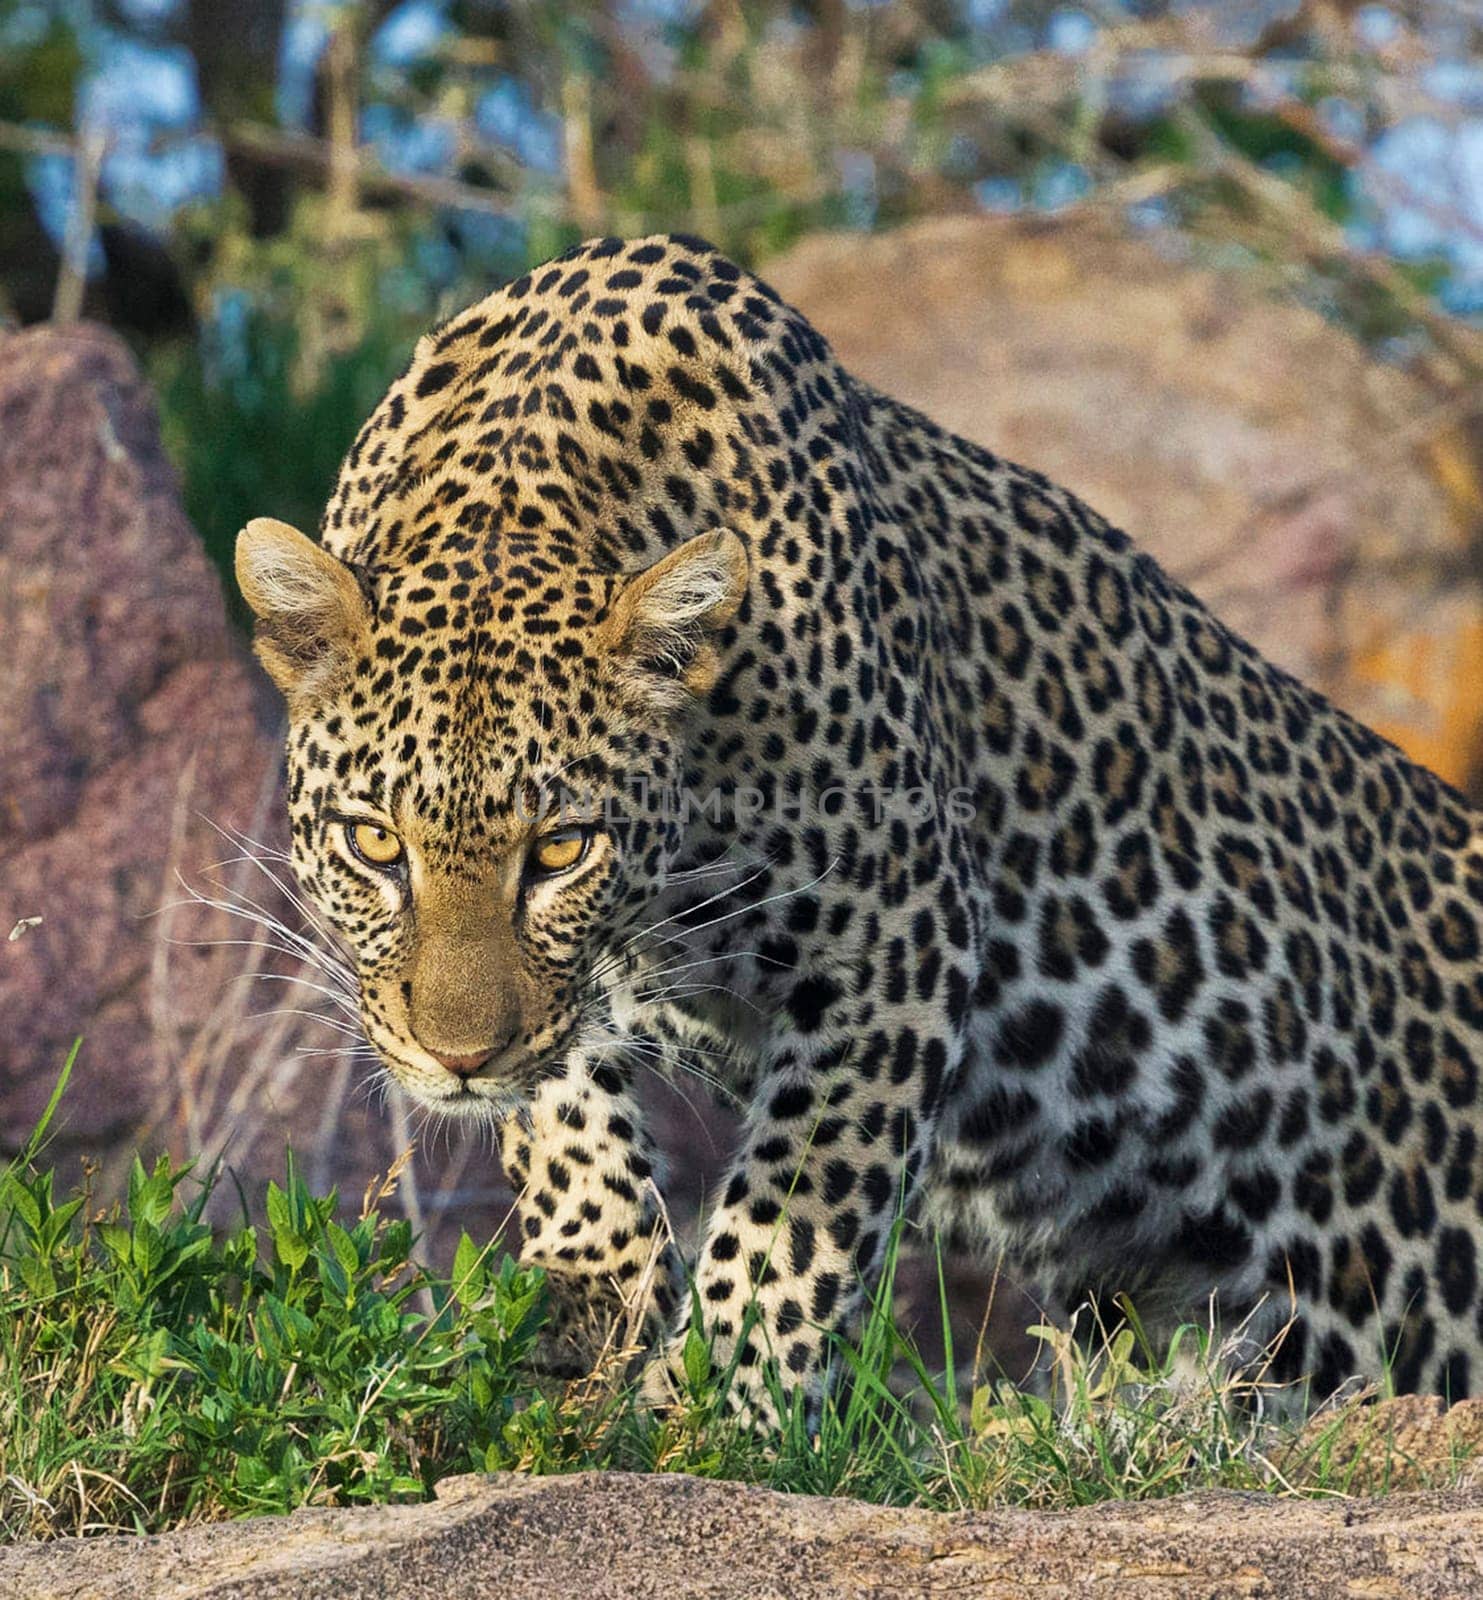 Beautiful and Breathtaking wildlife in Tanzania